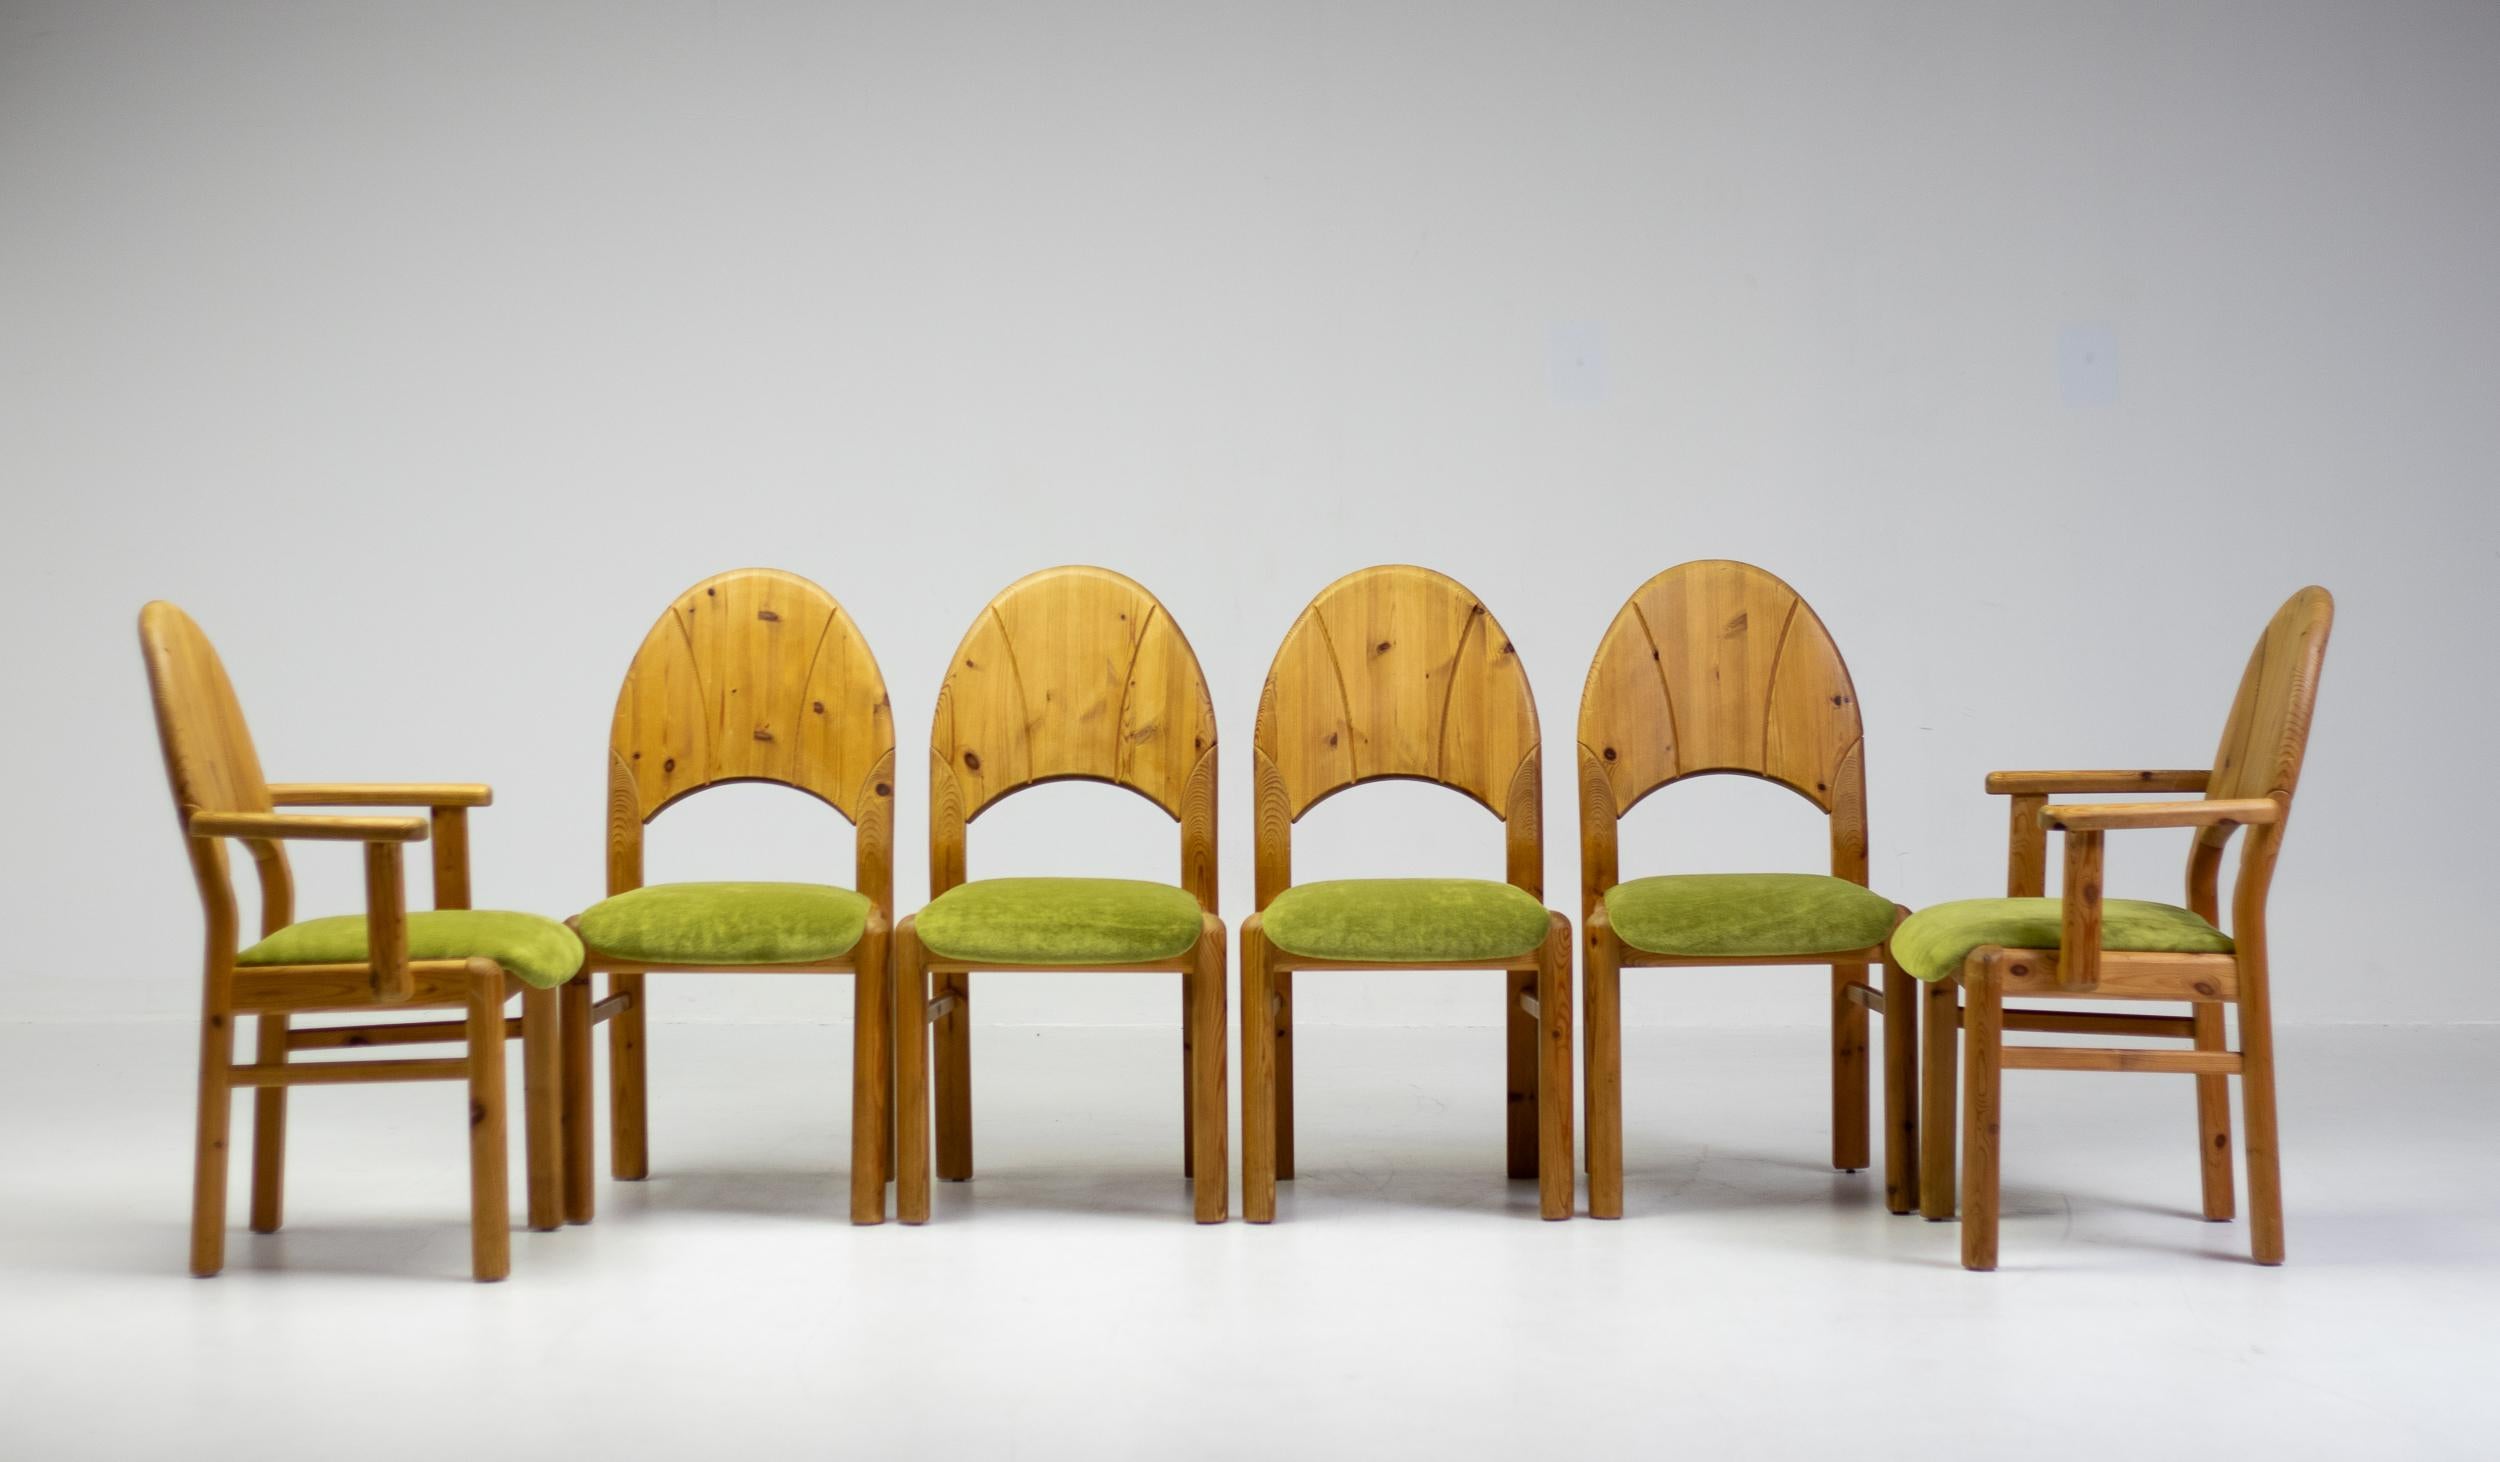 Wunderschönes skandinavisches Mid Century Modern geschnitztes Set aus 4 Beistellstühlen und 2 Sesseln aus Oregon Kiefer mit neuer Polsterung aus grasgrünem Frottee. Dies ist eine sehr freundliche und einladende Umgebung. Die Abmessungen sind für